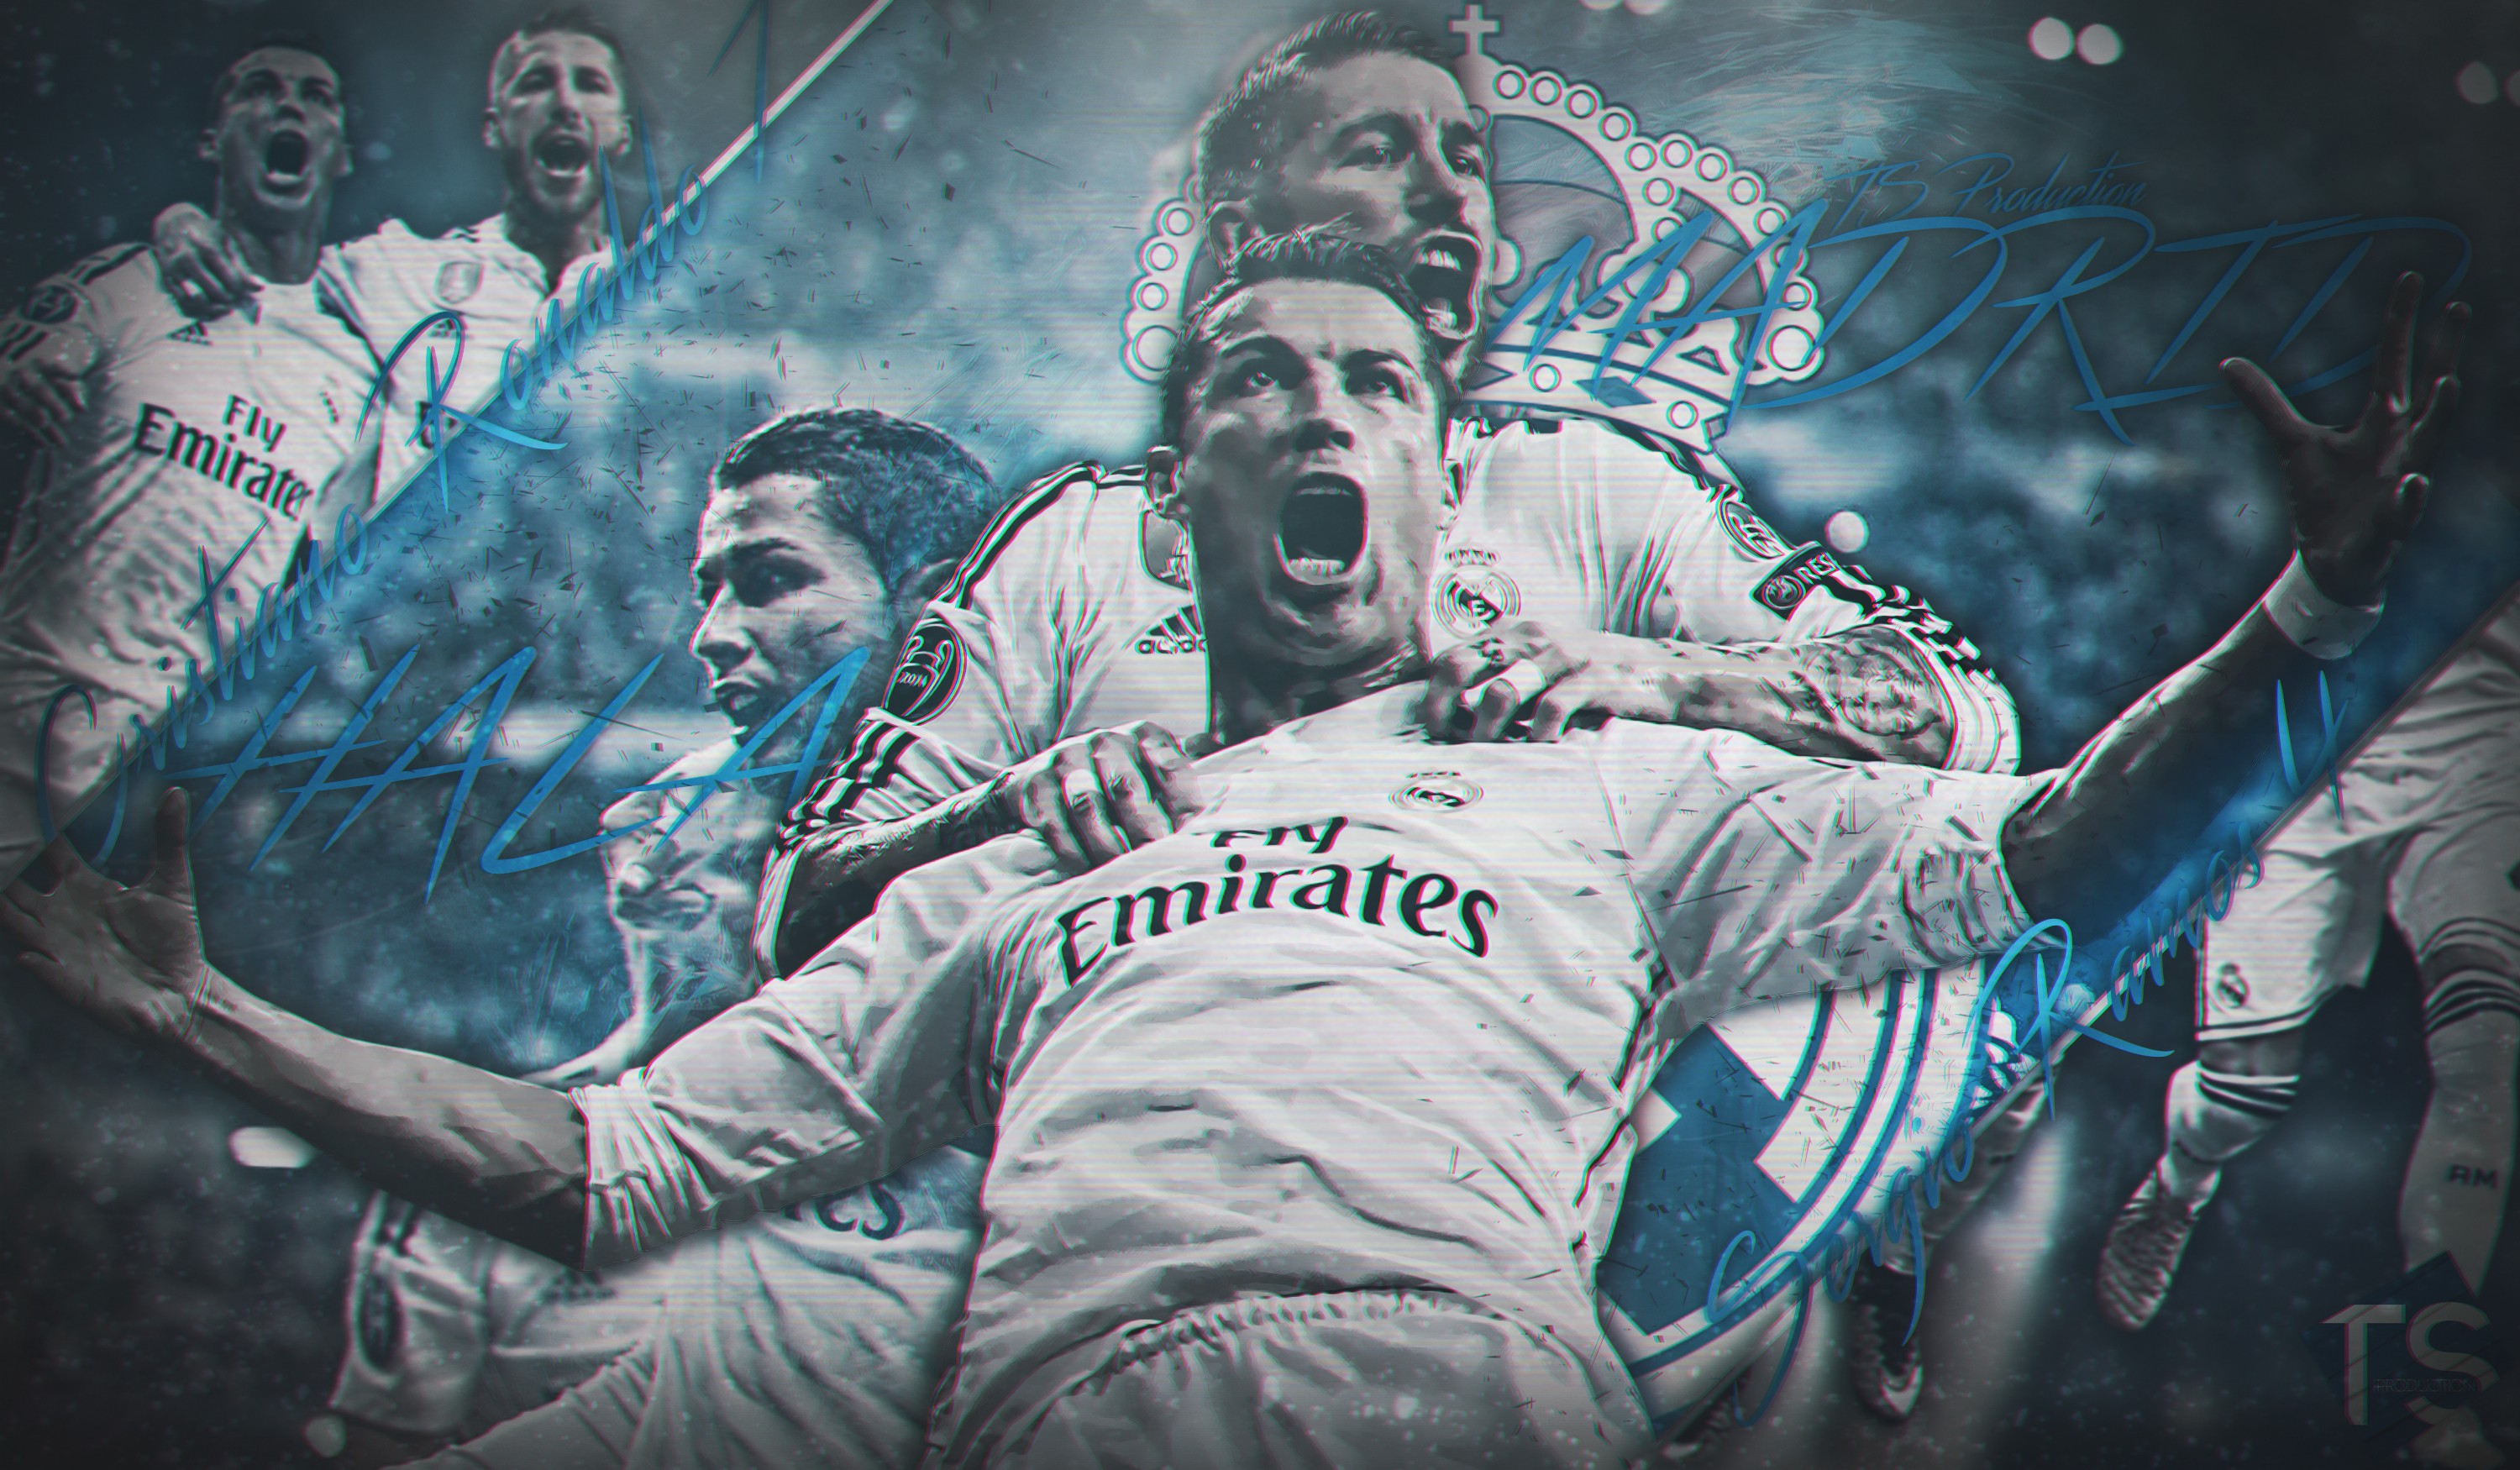 Sergio Ramos - Real Madrid: Hãy nhấn xem ảnh để chiêm ngưỡng vẻ đẹp của Sergio Ramos - một trong những cầu thủ xuất sắc nhất của Real Madrid. Dù bạn là fan của cầu thủ hay đội bóng, ảnh của anh sẽ khiến bạn ấn tượng với tài năng và tinh thần thi đấu của anh.